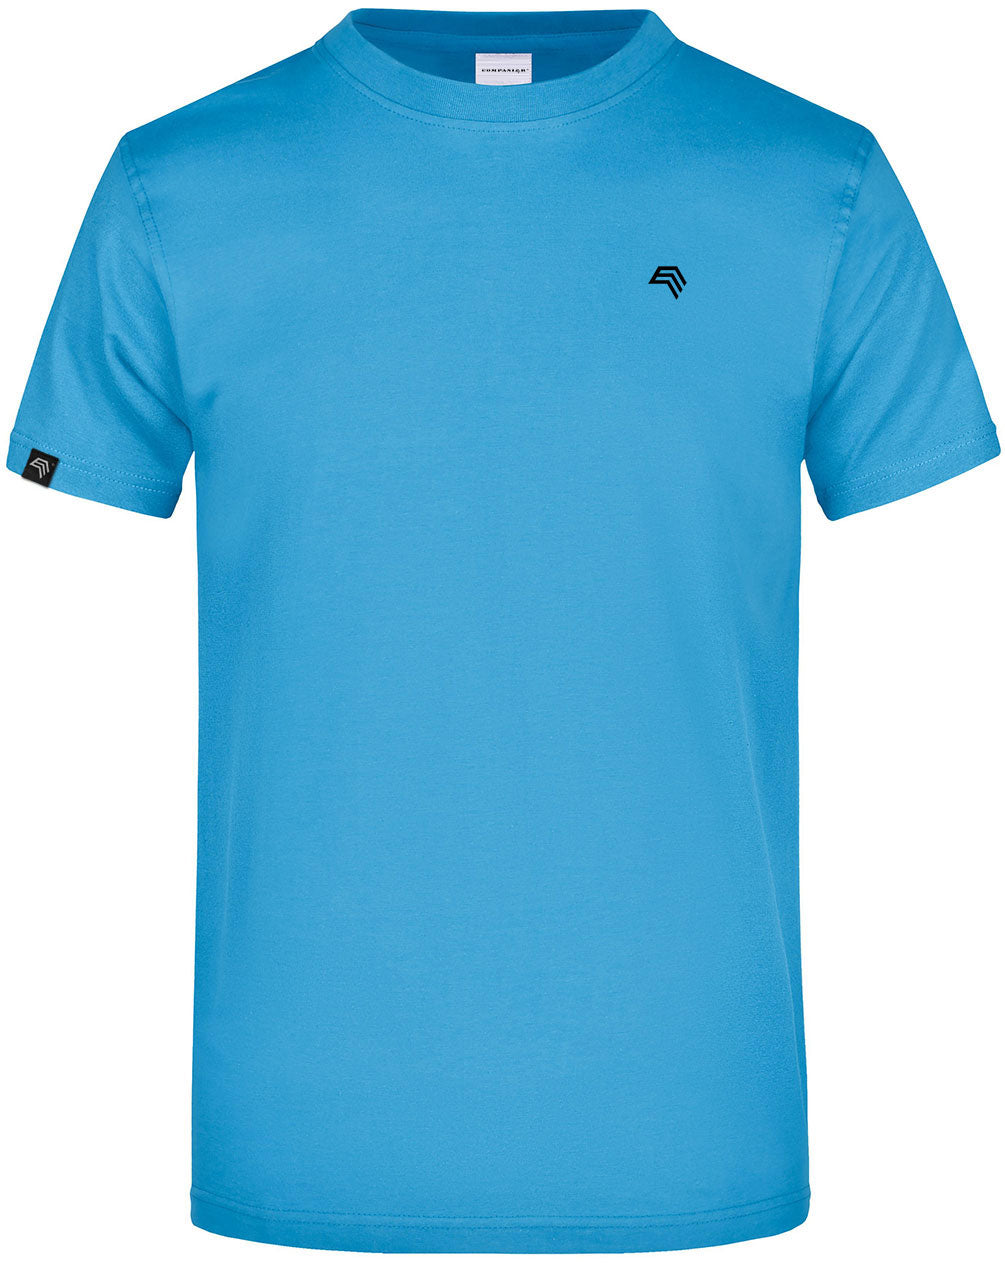 JAN 0002 ― Herren Heavy Komfort T-Shirt - Aqua Blau